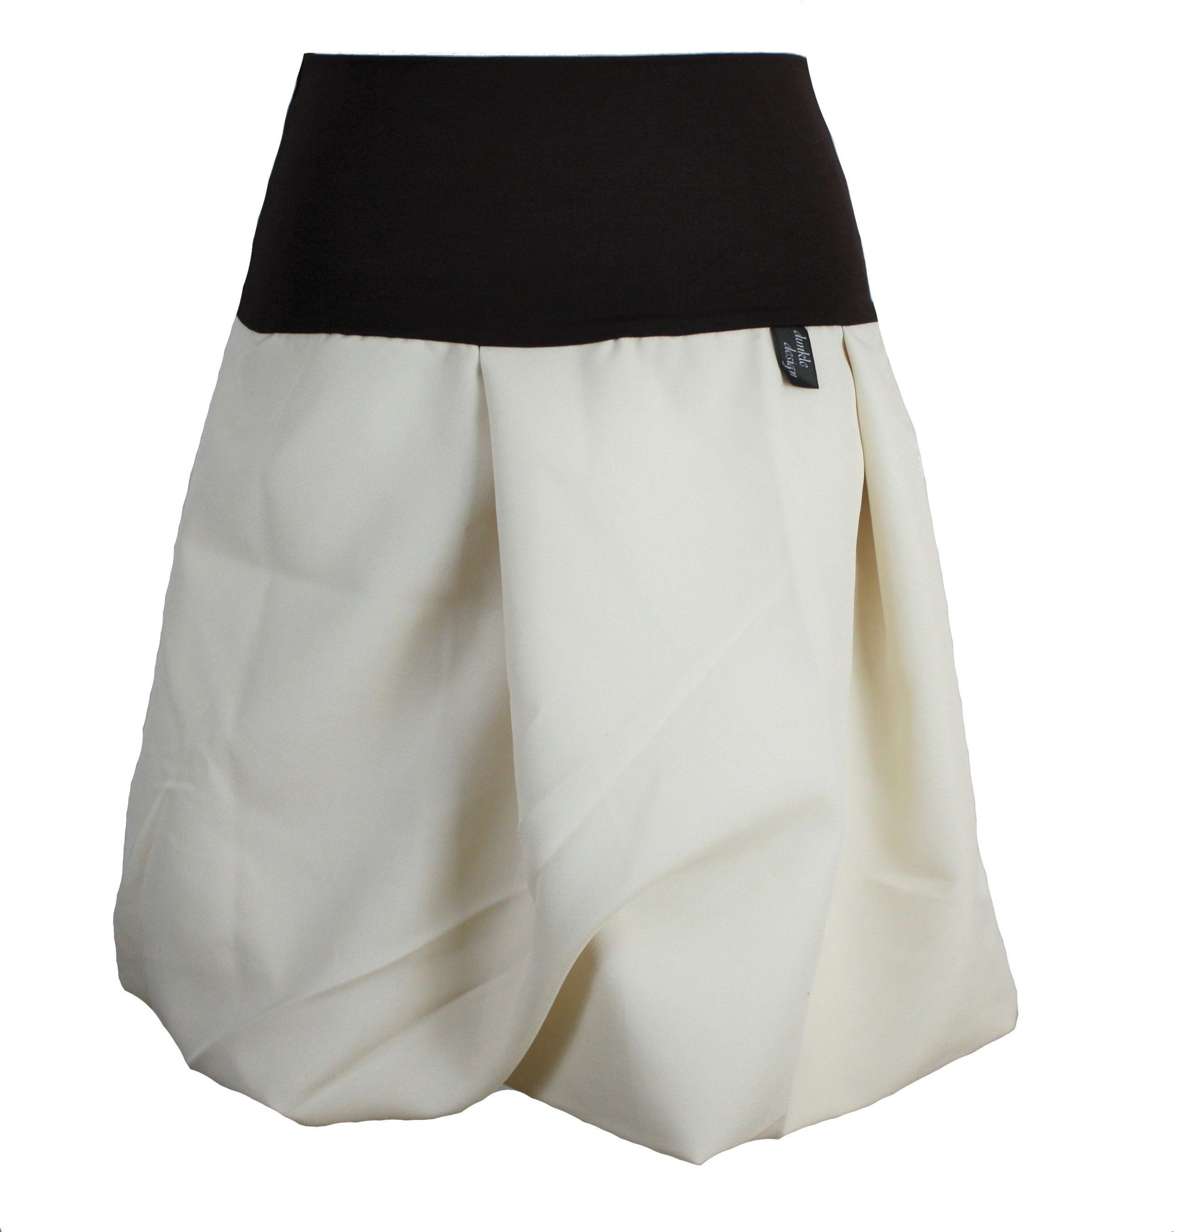 Летняя юбка А-силуэта с воздушным шаром на поясе коричневого или черного цвета, 51 см.